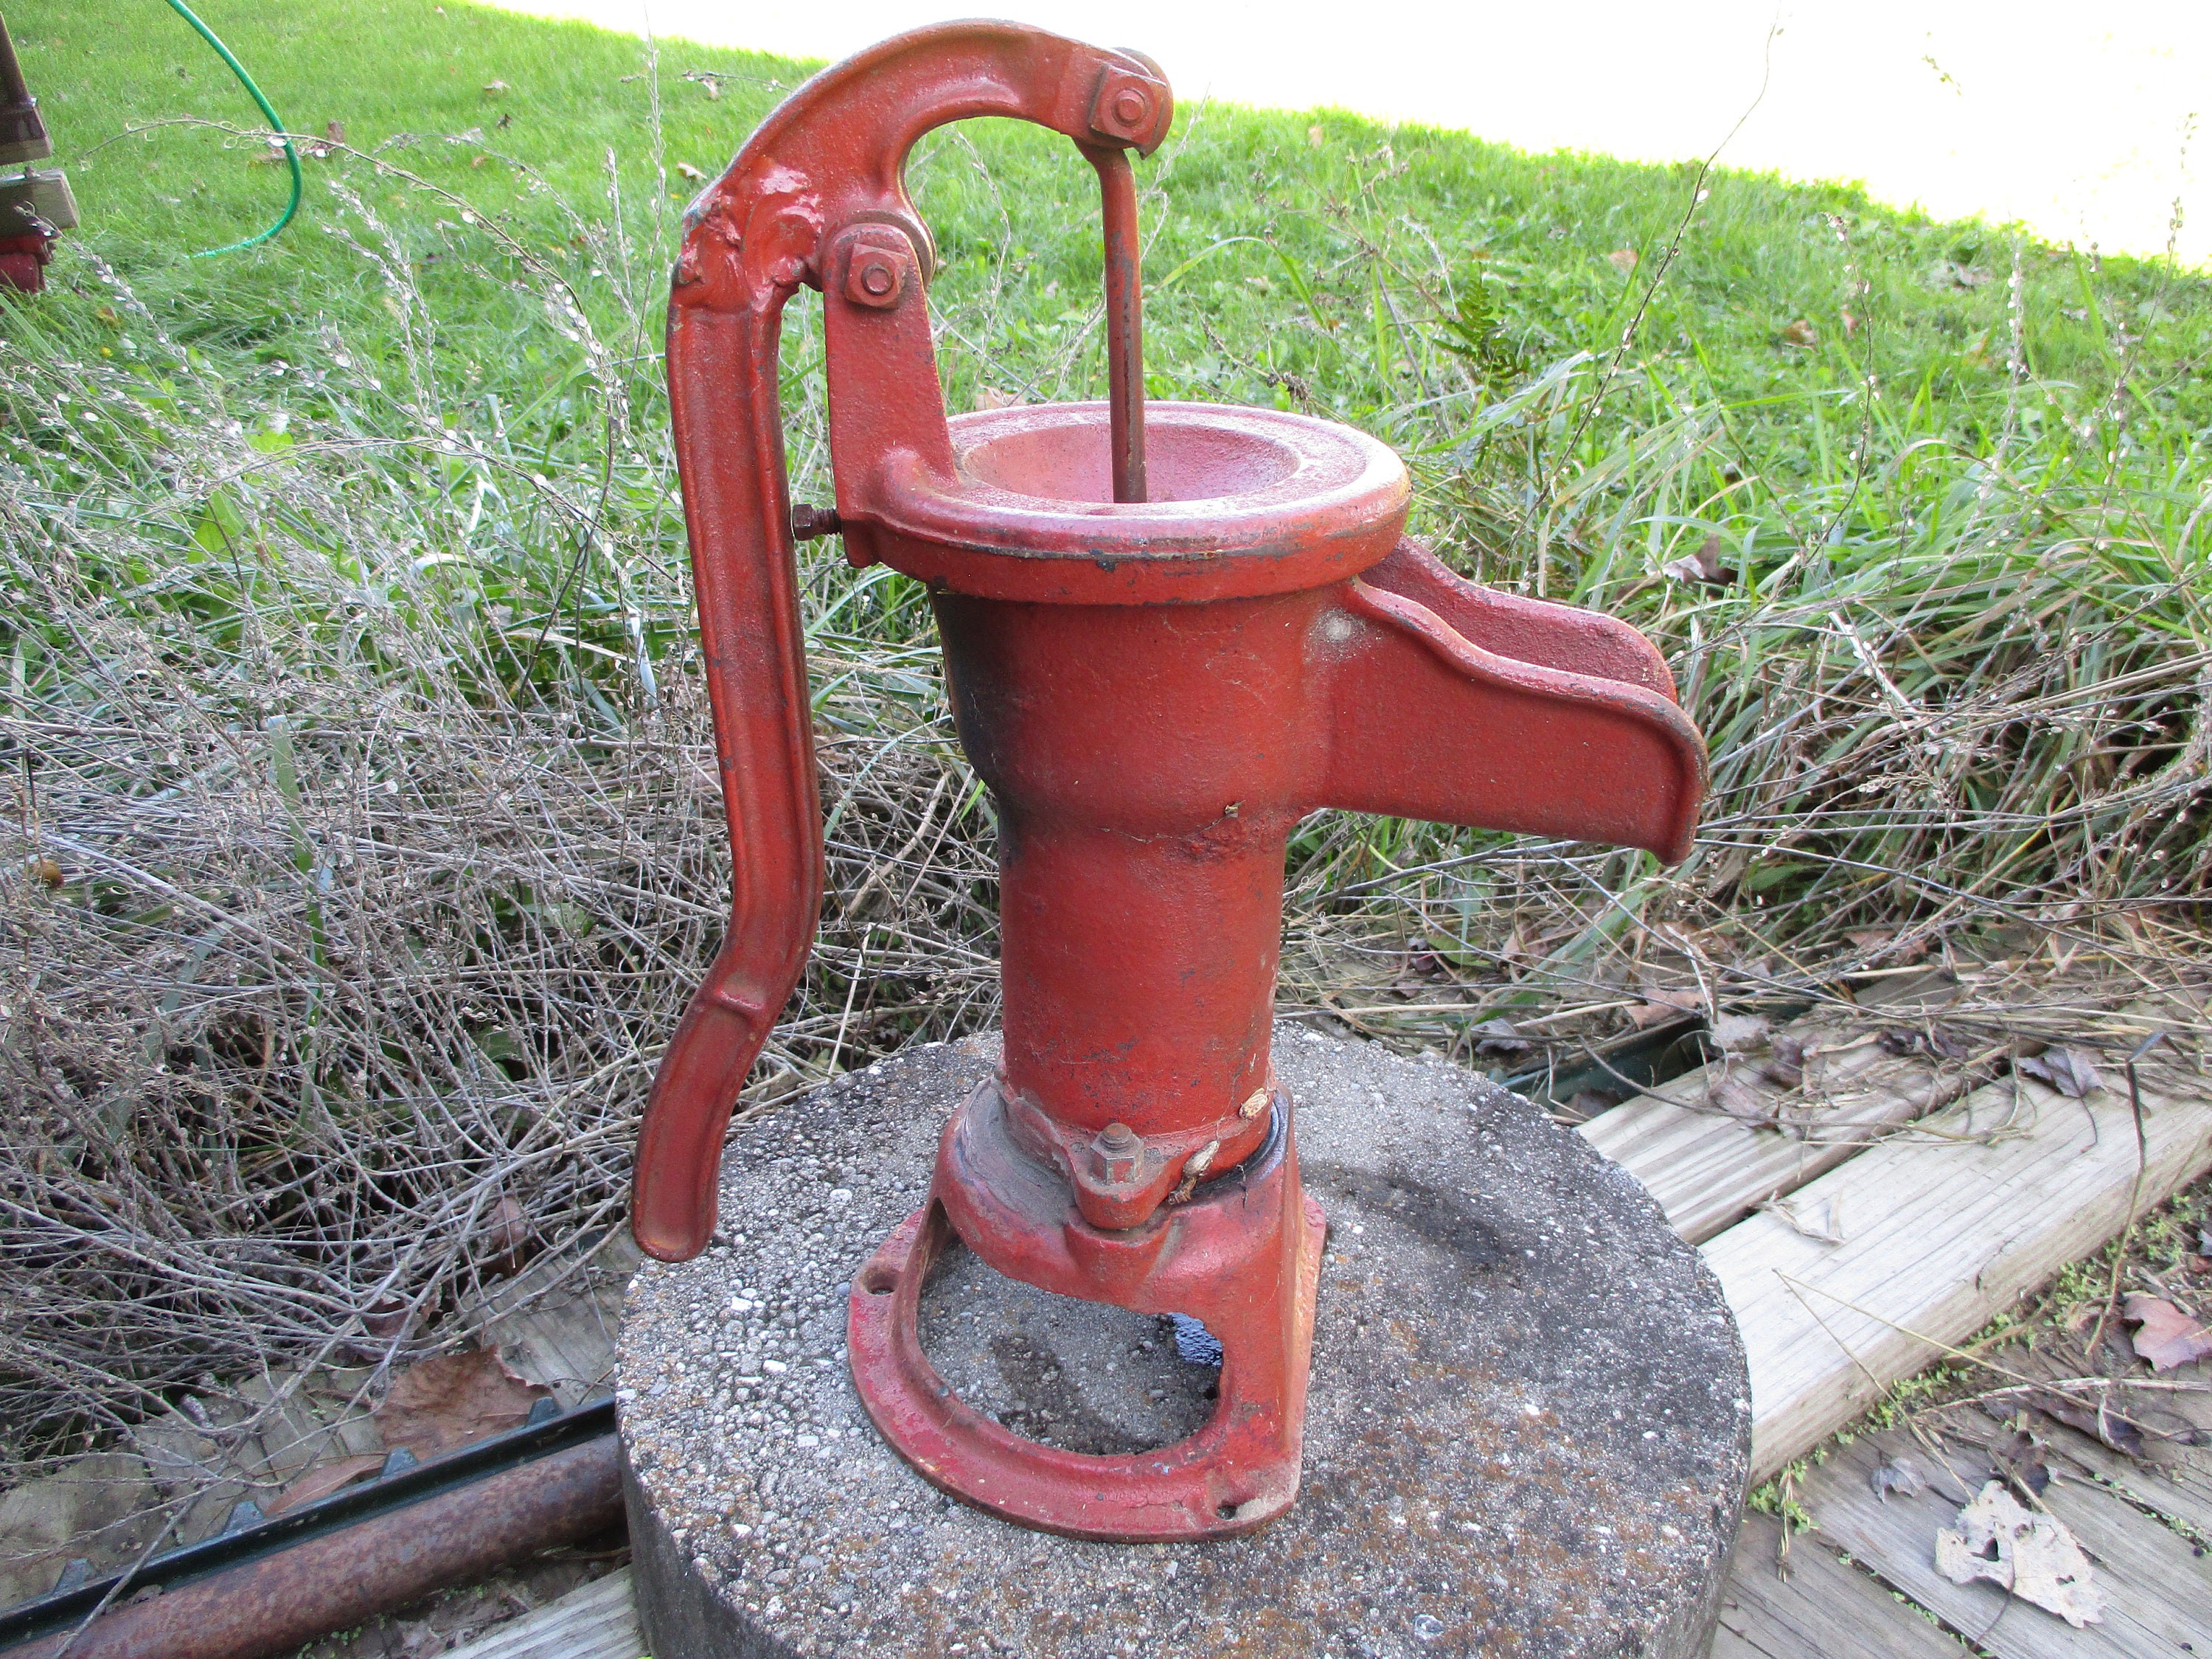 Magnifique grande pompe manuelle - belle pompe à eau de type ancienne.